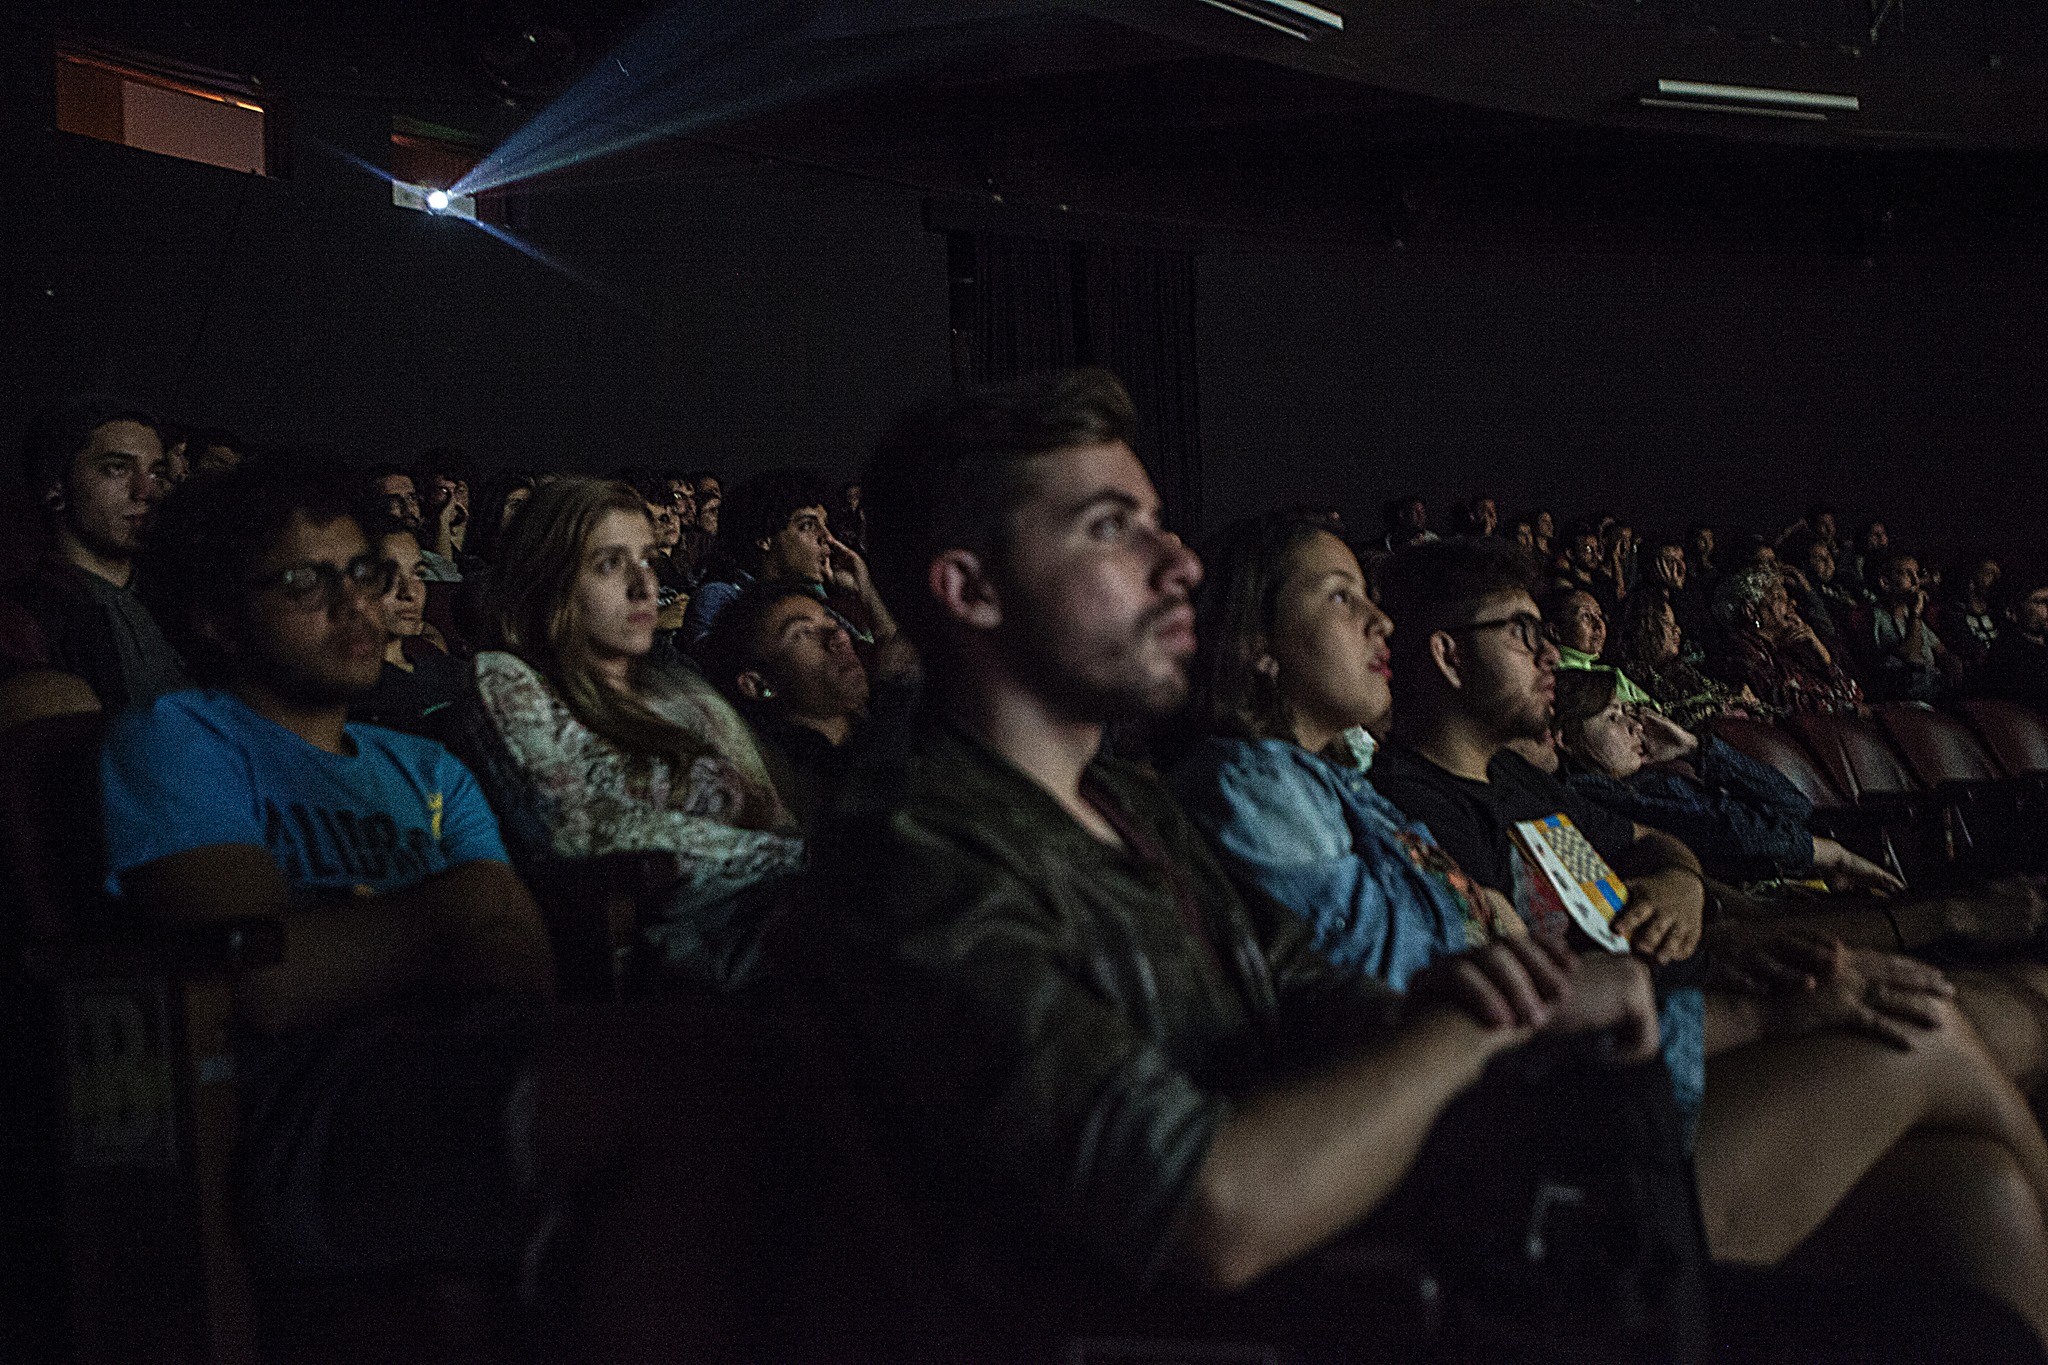 Kino-Olho volta a realizar festival de cinema em Rio Claro, no mês de agosto